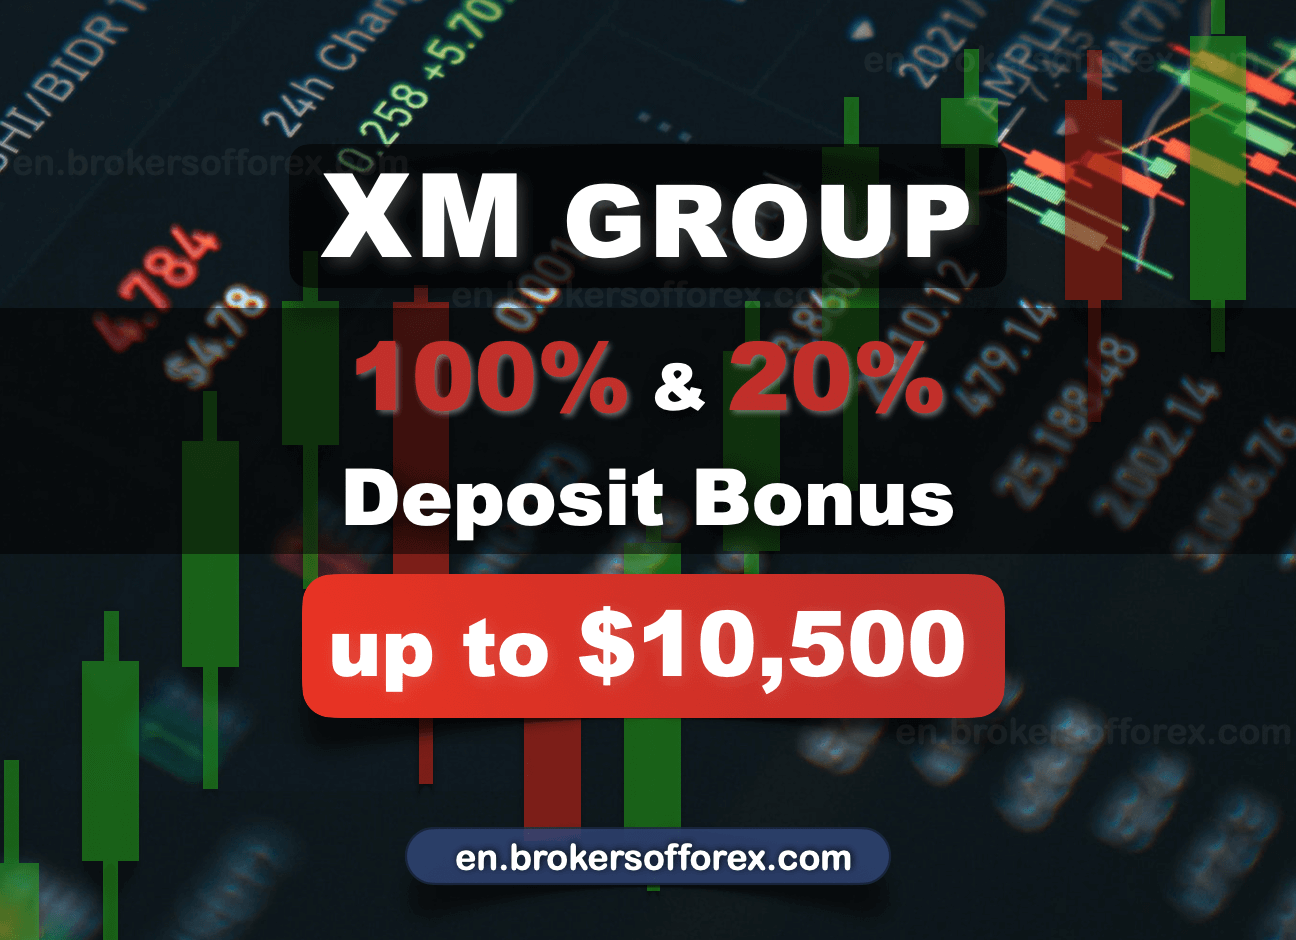 XM Group 100% / 20% Deposit Bonus up to $10,500